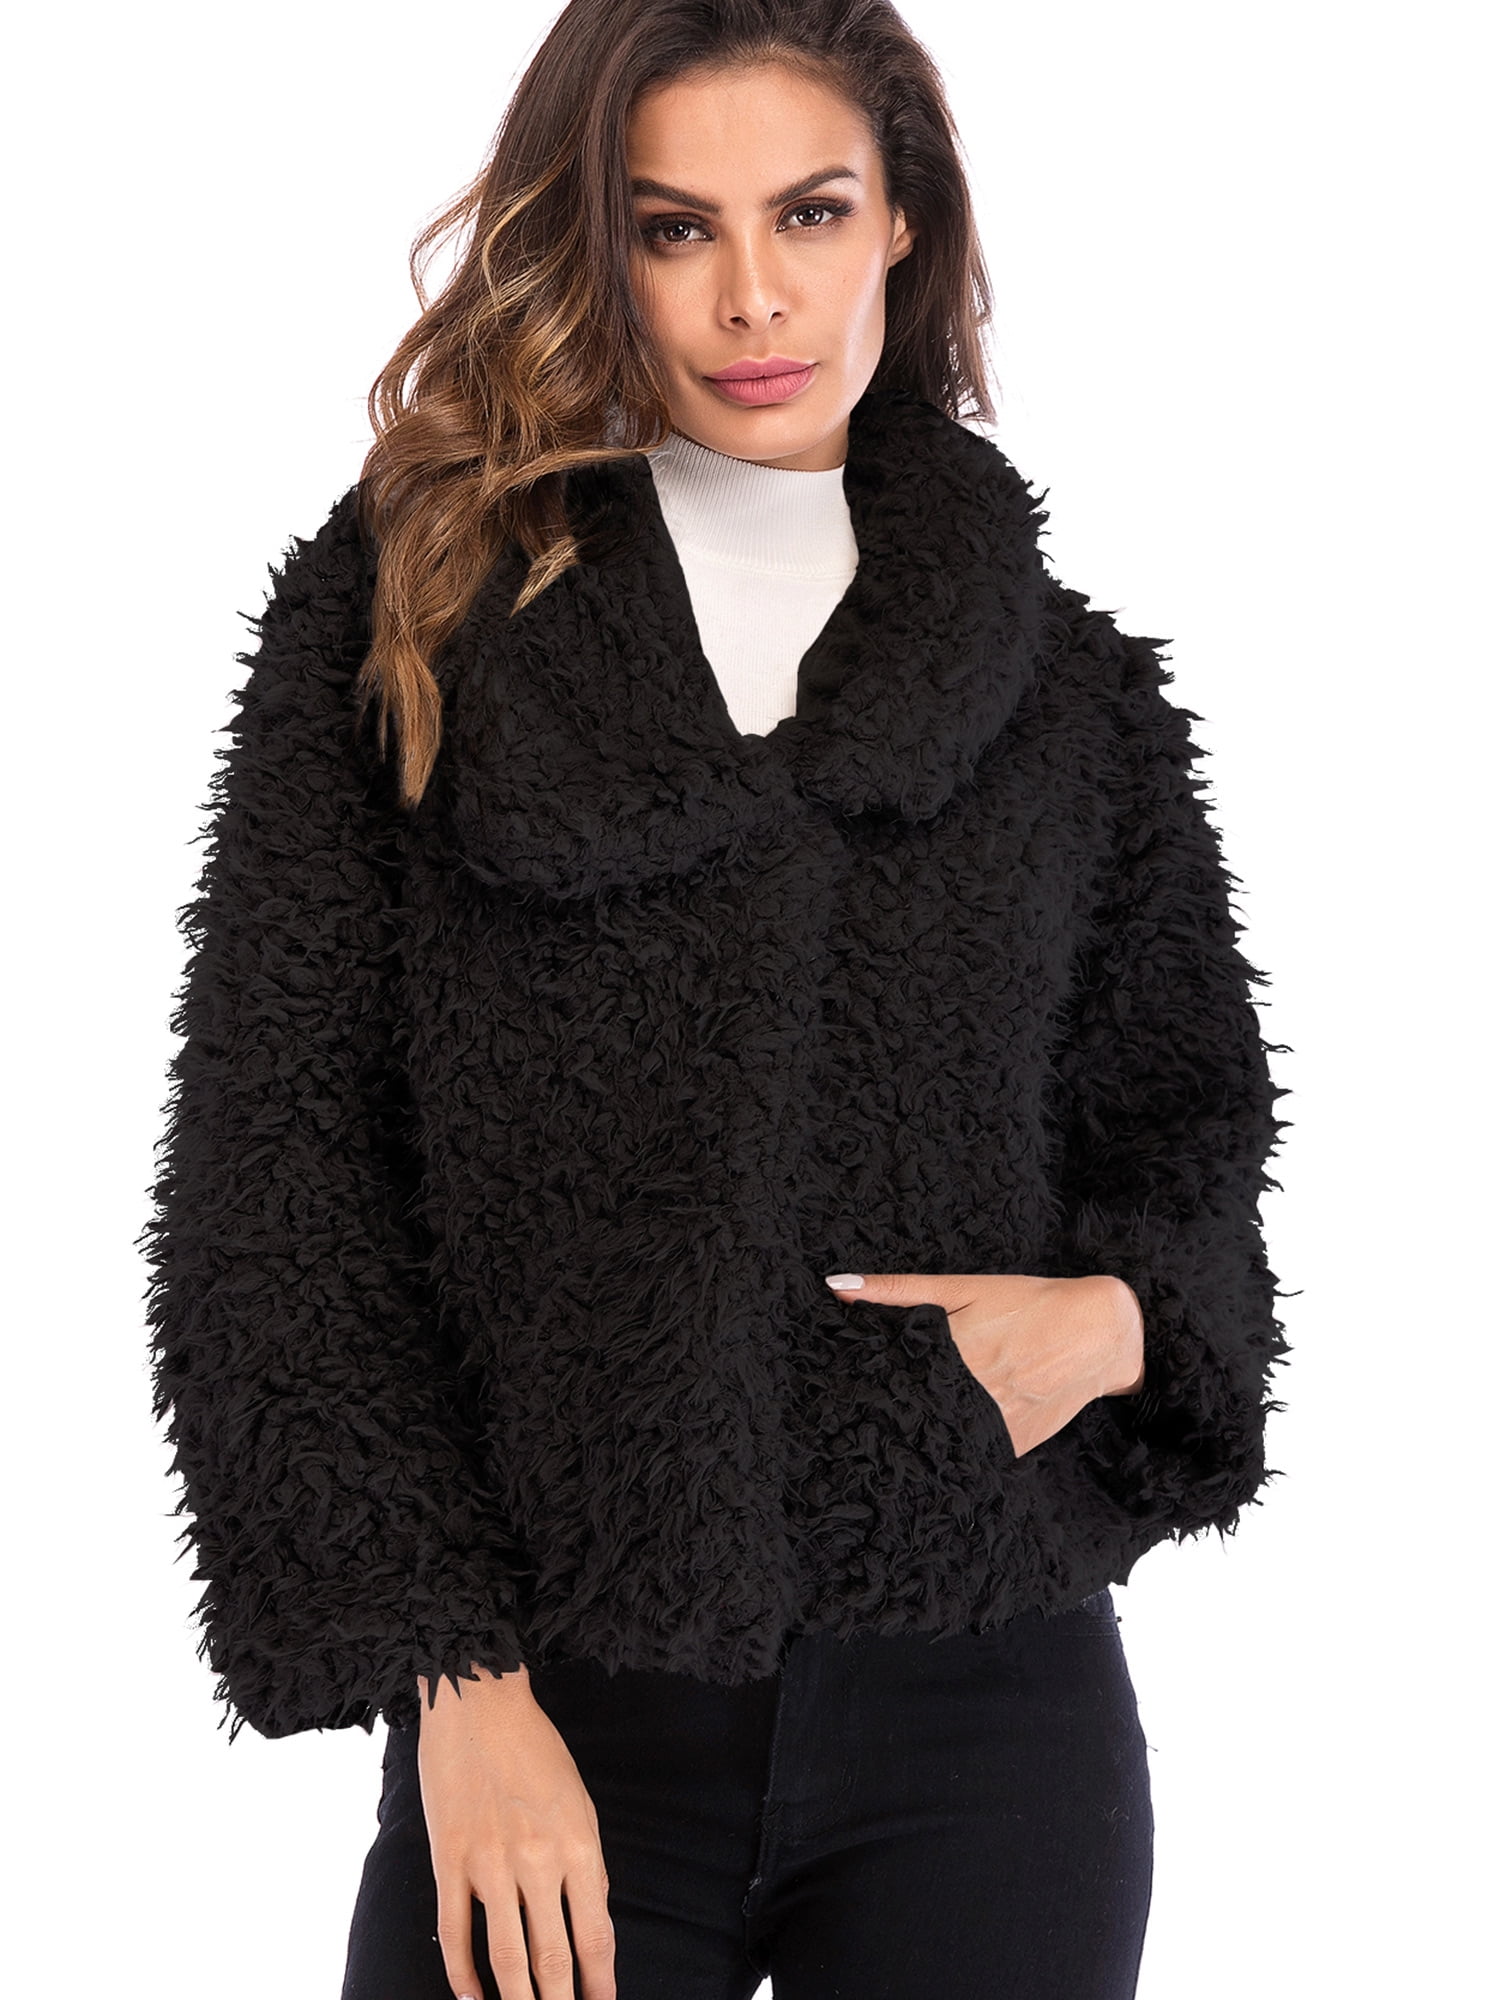 SAYFUT Women's Faux Fur Jacket Shaggy Jacket Winter Fleece Coat Outwear ...